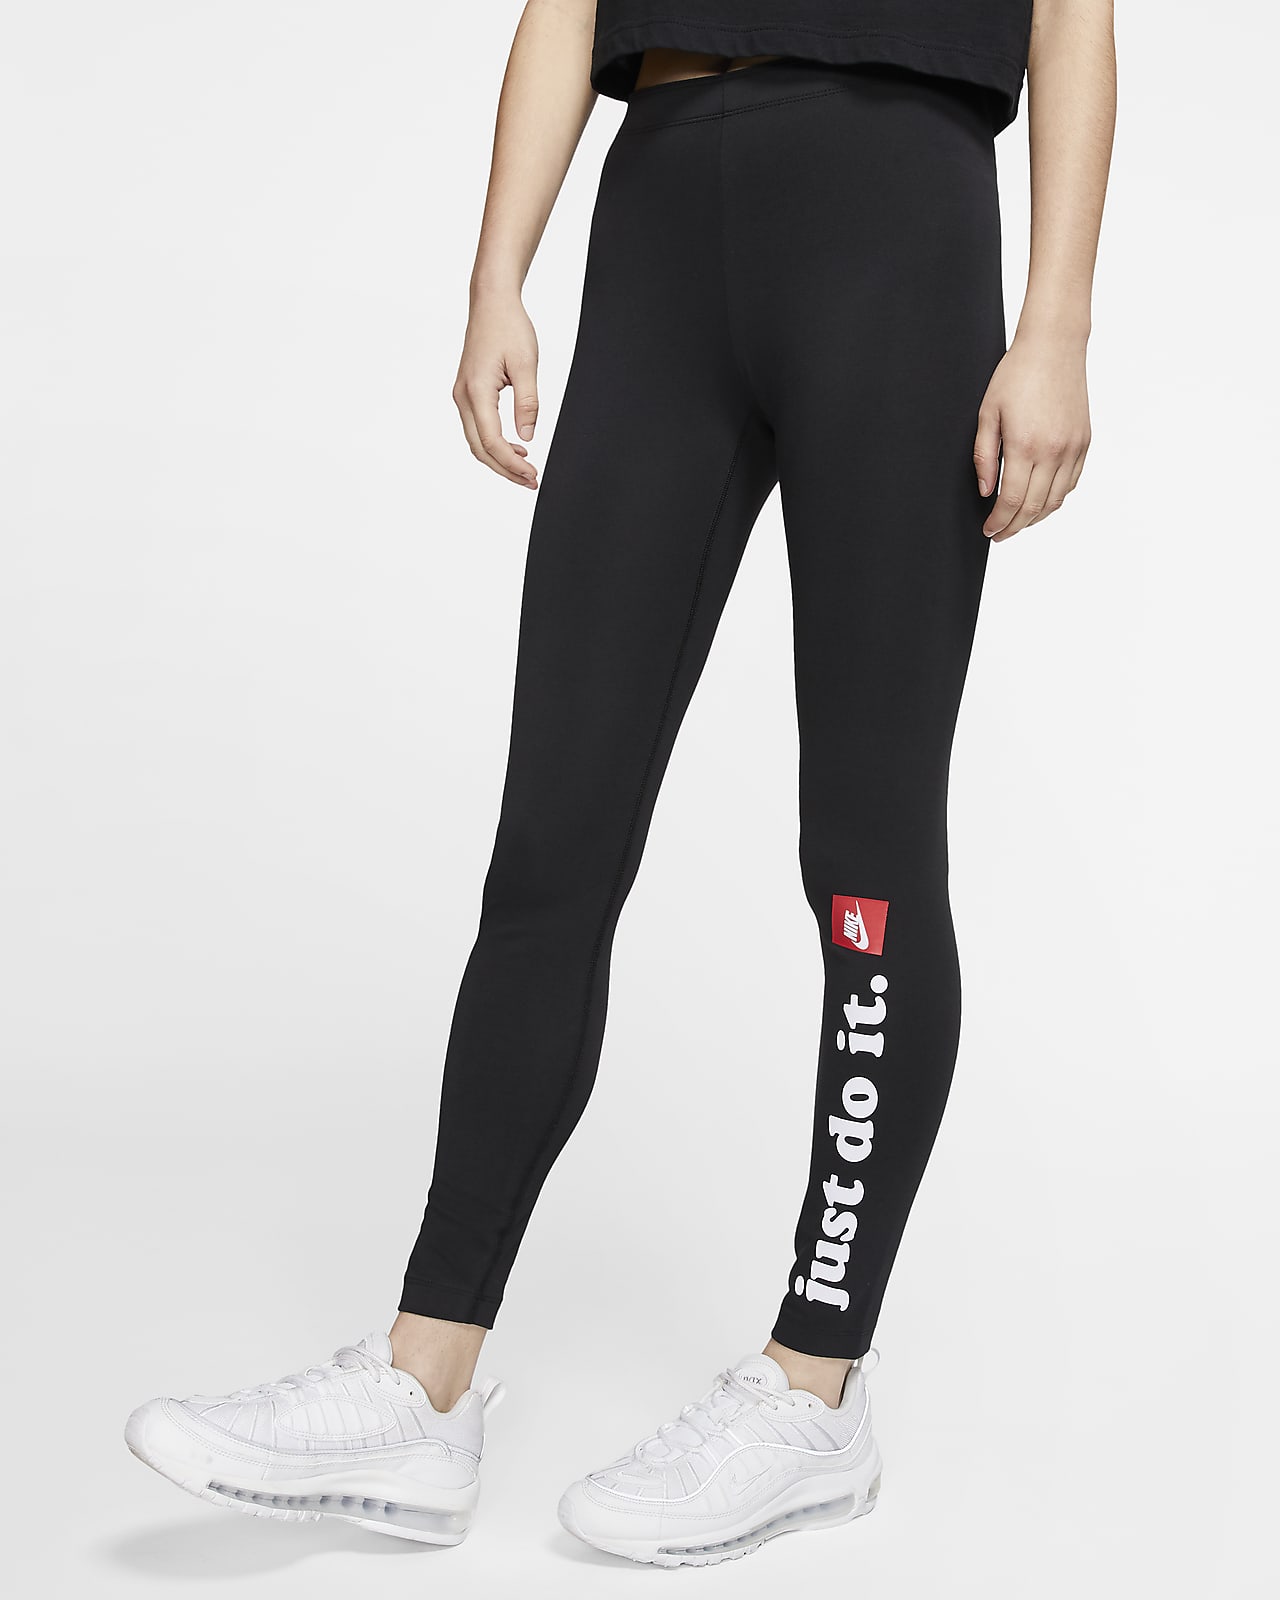 Leggings Nike Sportswear Club - Donna 